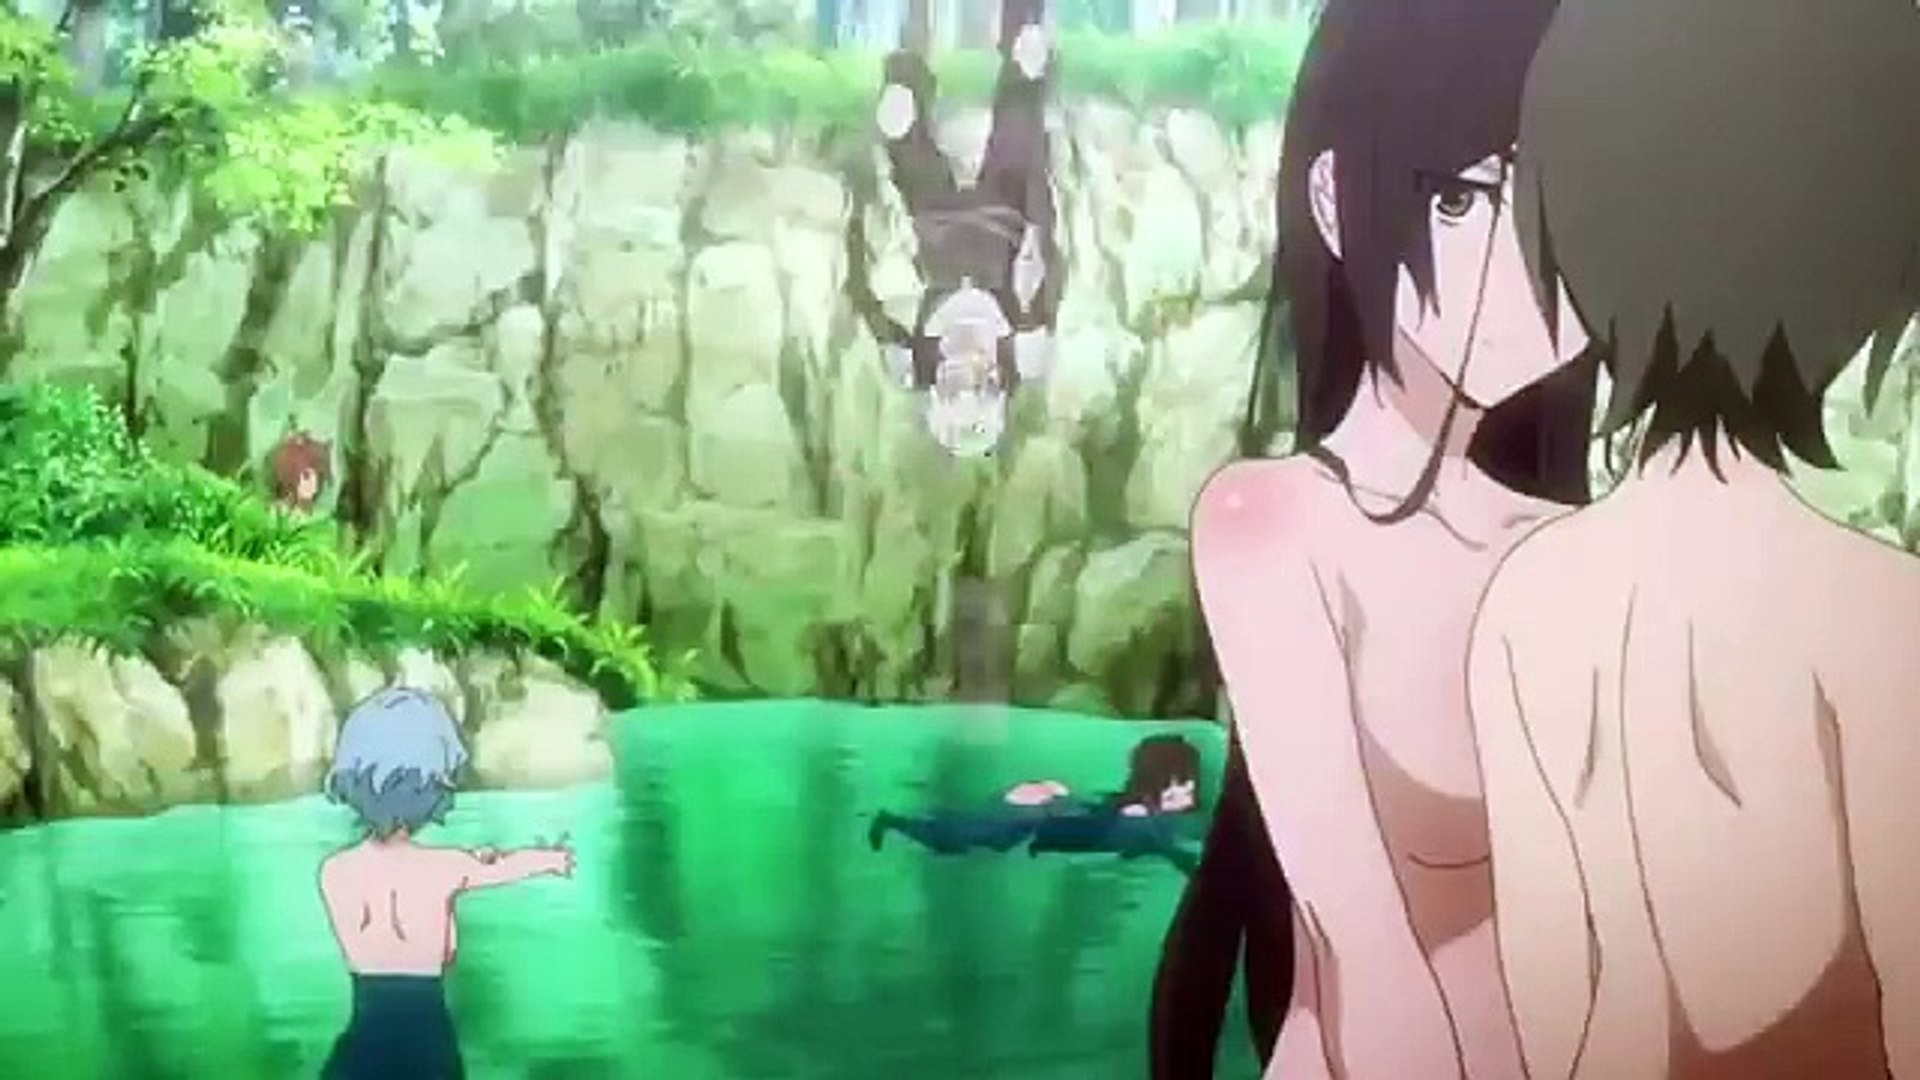 Hot anime scenes